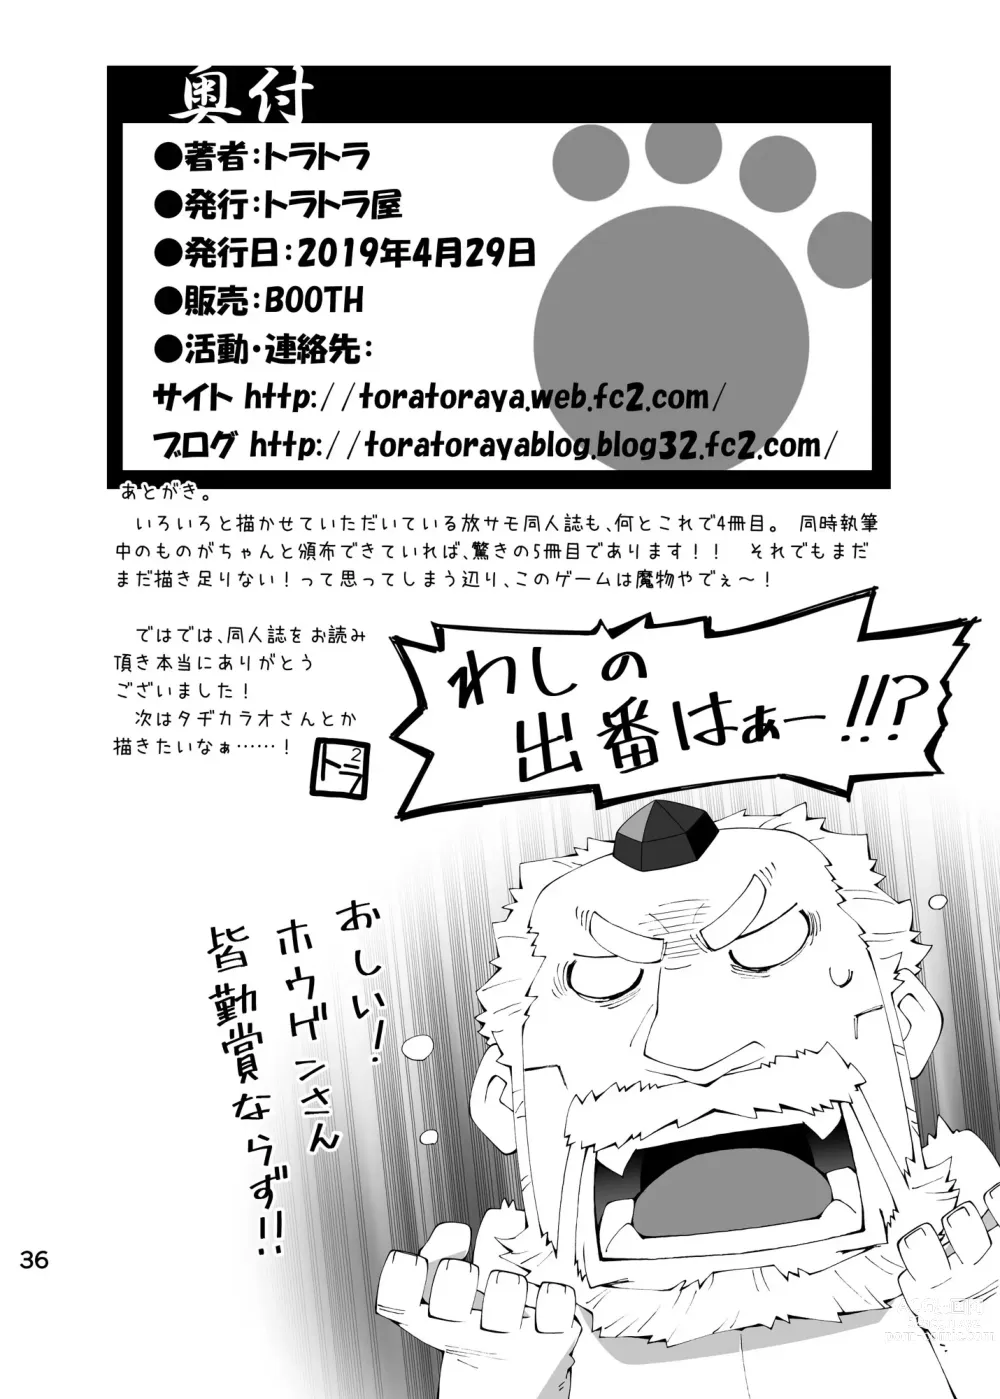 Page 35 of doujinshi Oji-Oji